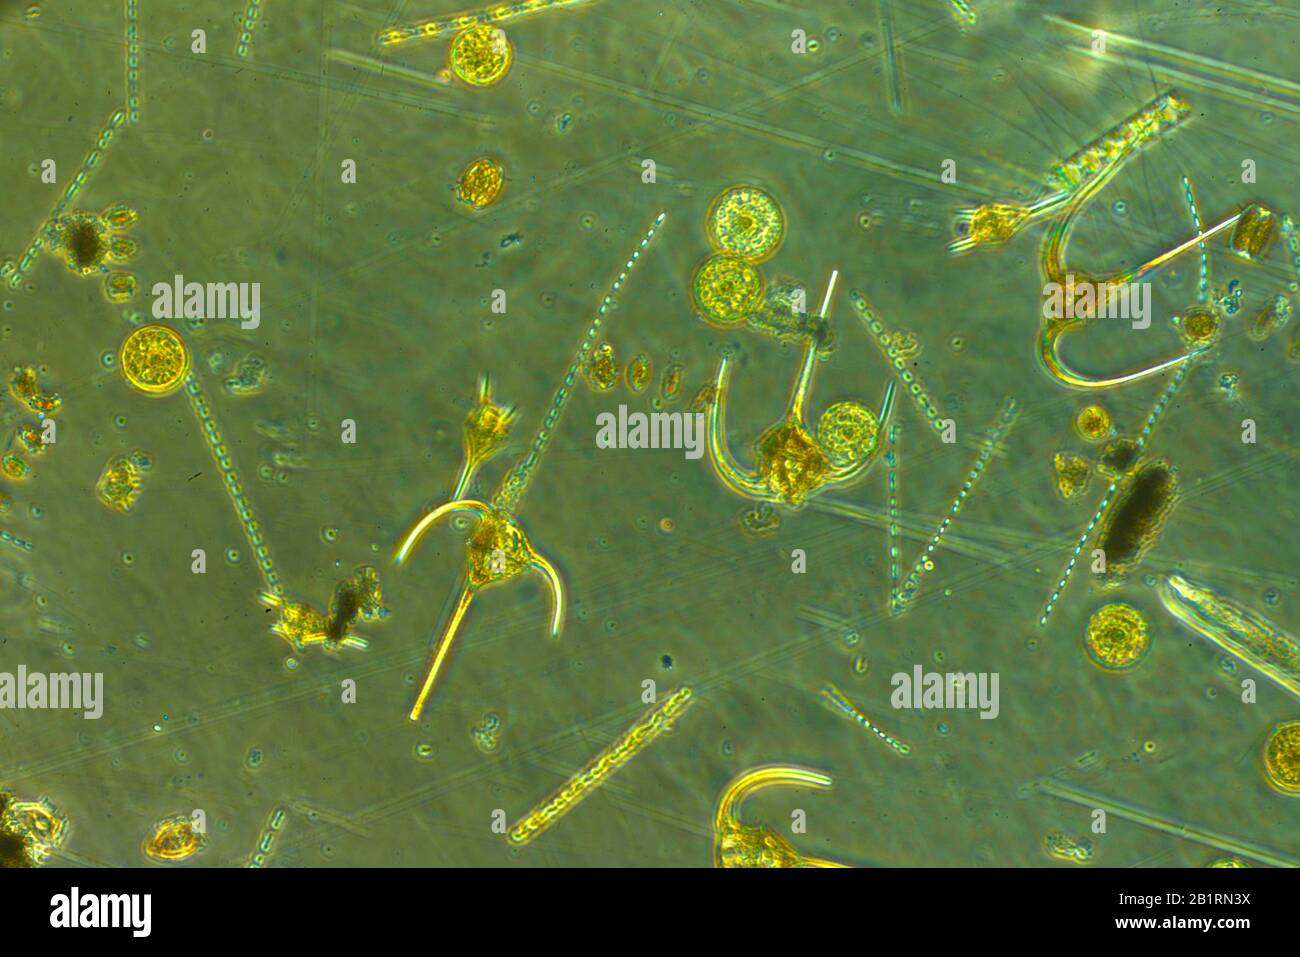 Dinoflagellat, Biolumineszenz, Dinoflagellaten, Flagellum, Protista, .flagellate Eukaryoten, Dinoflagellata, Marine, Plankton, photosynthetisch, mi Stockfoto